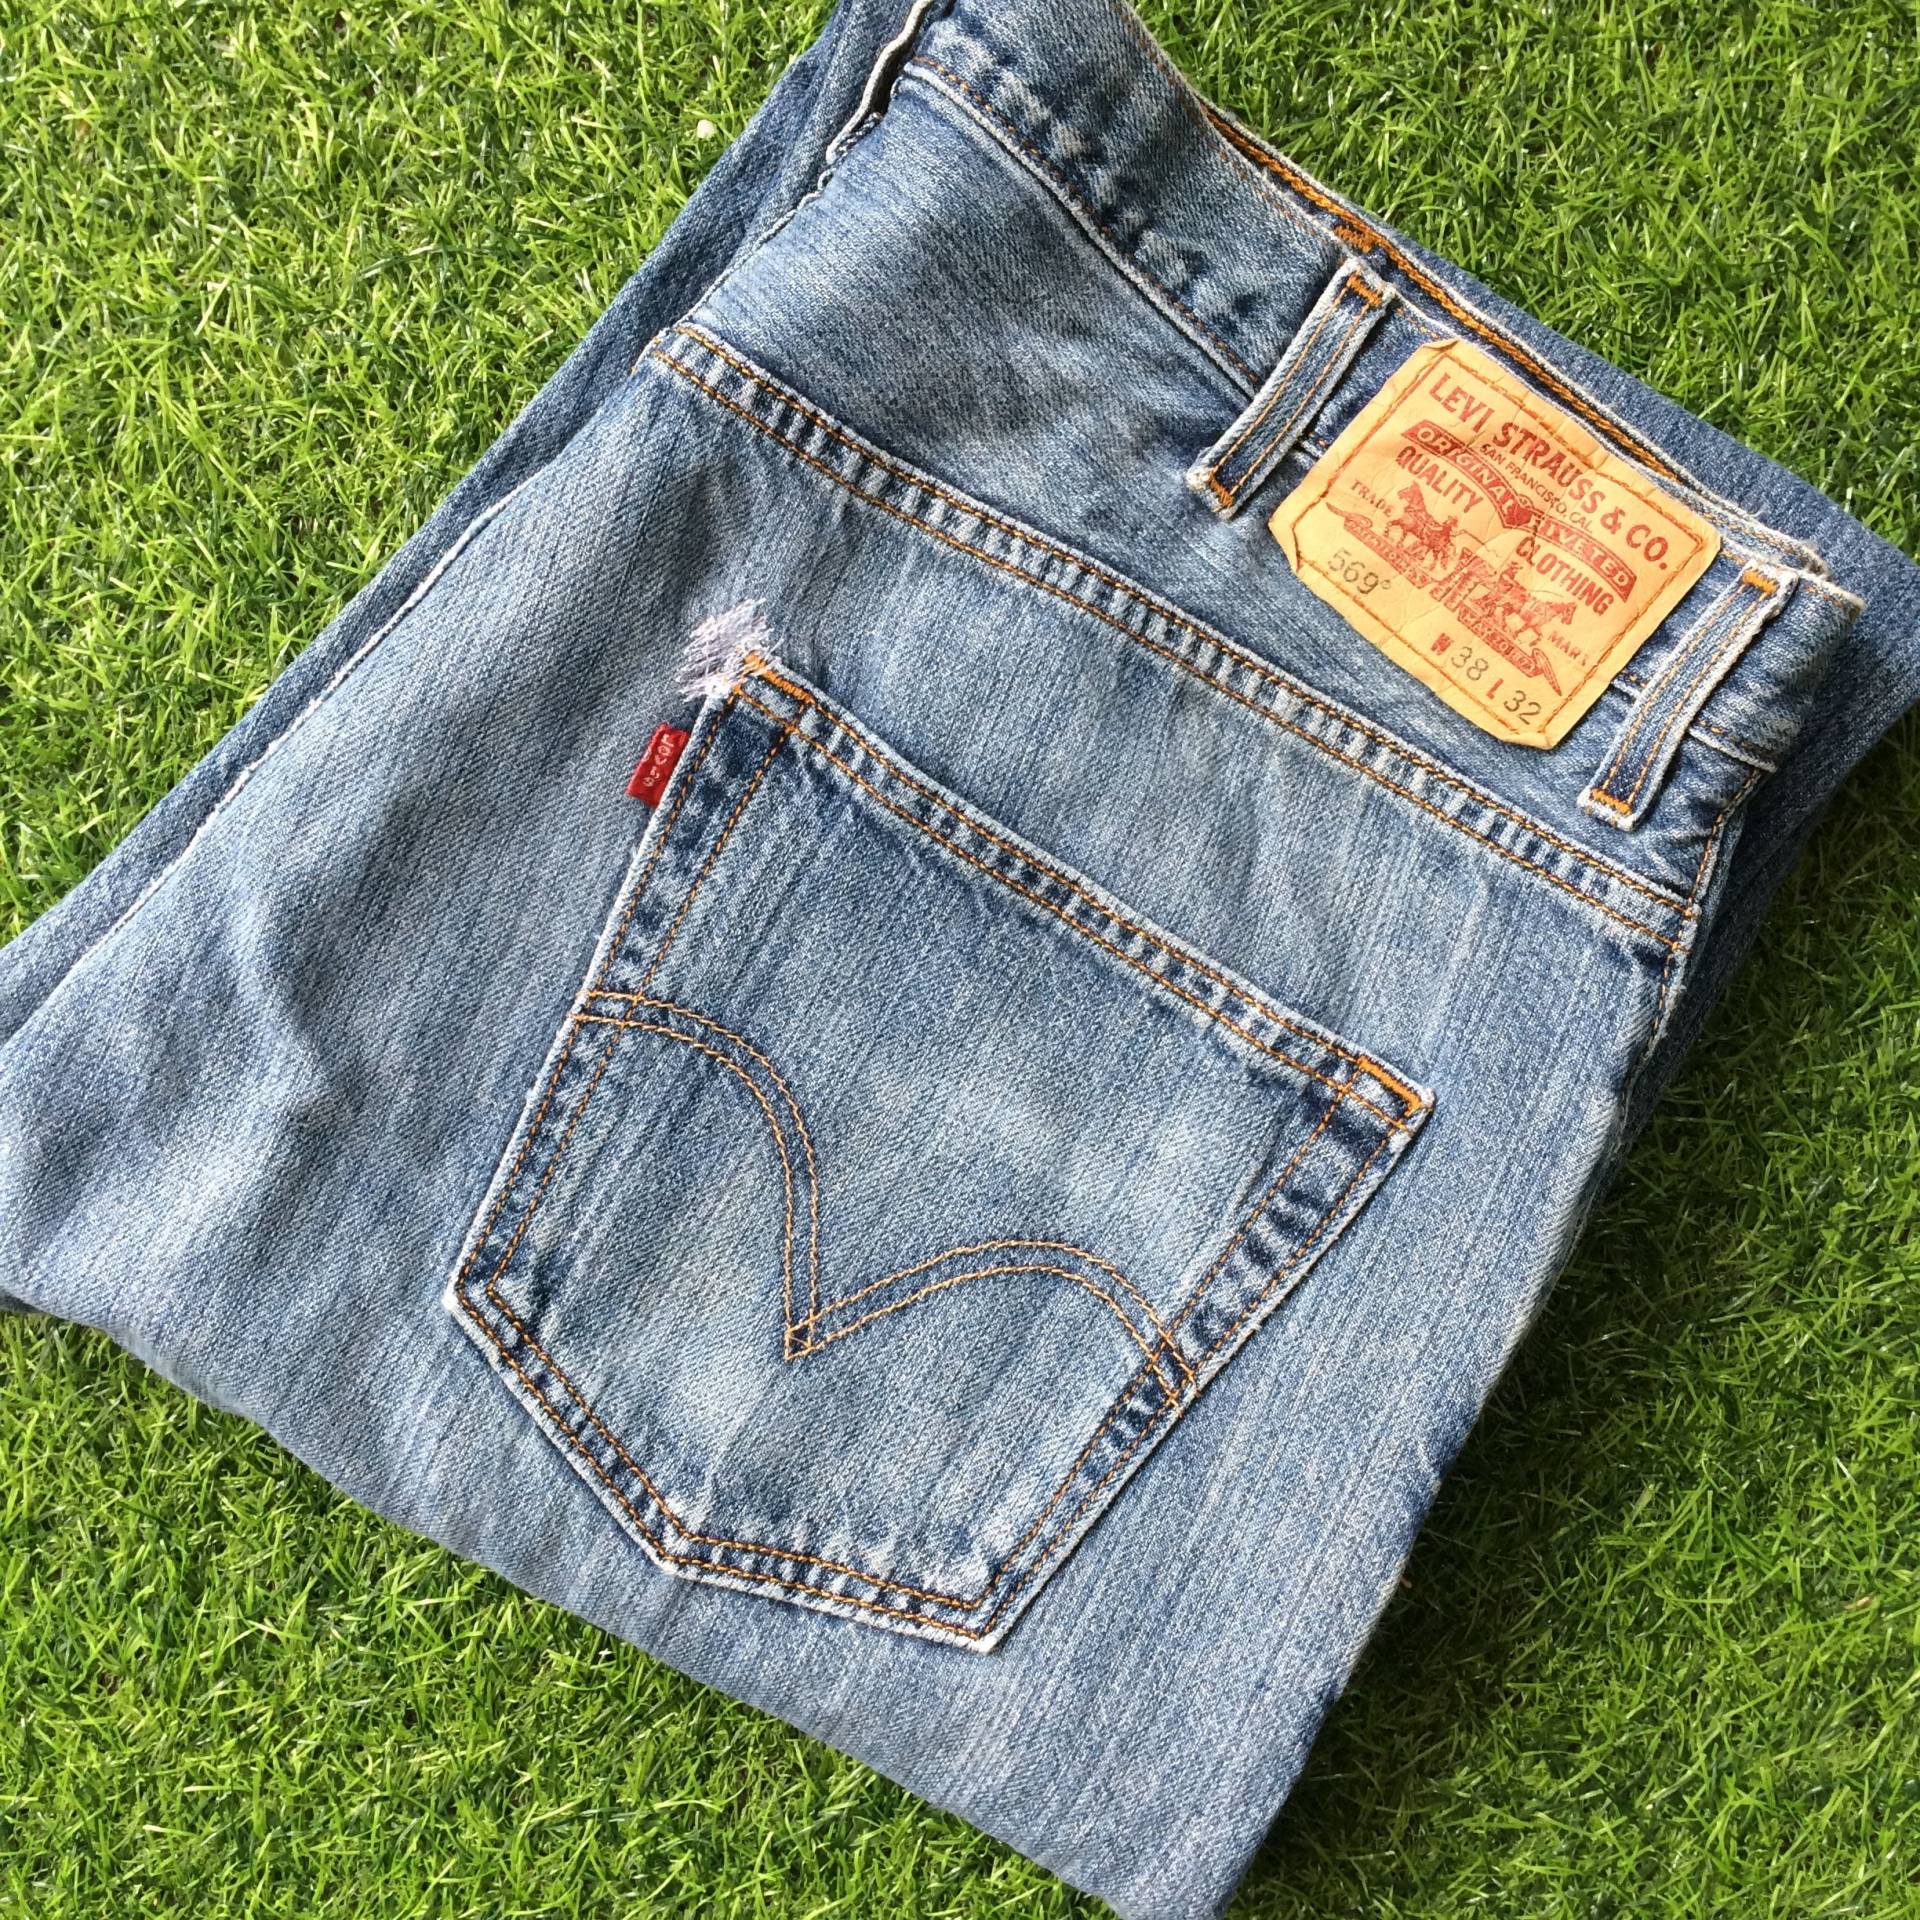 Größe 38 Vintage Distressed Levis 569 Plus Size Jeans Verblasst Medium Wash Denim Straight Leg Loose Fit Taille 38" von BackyardFashion